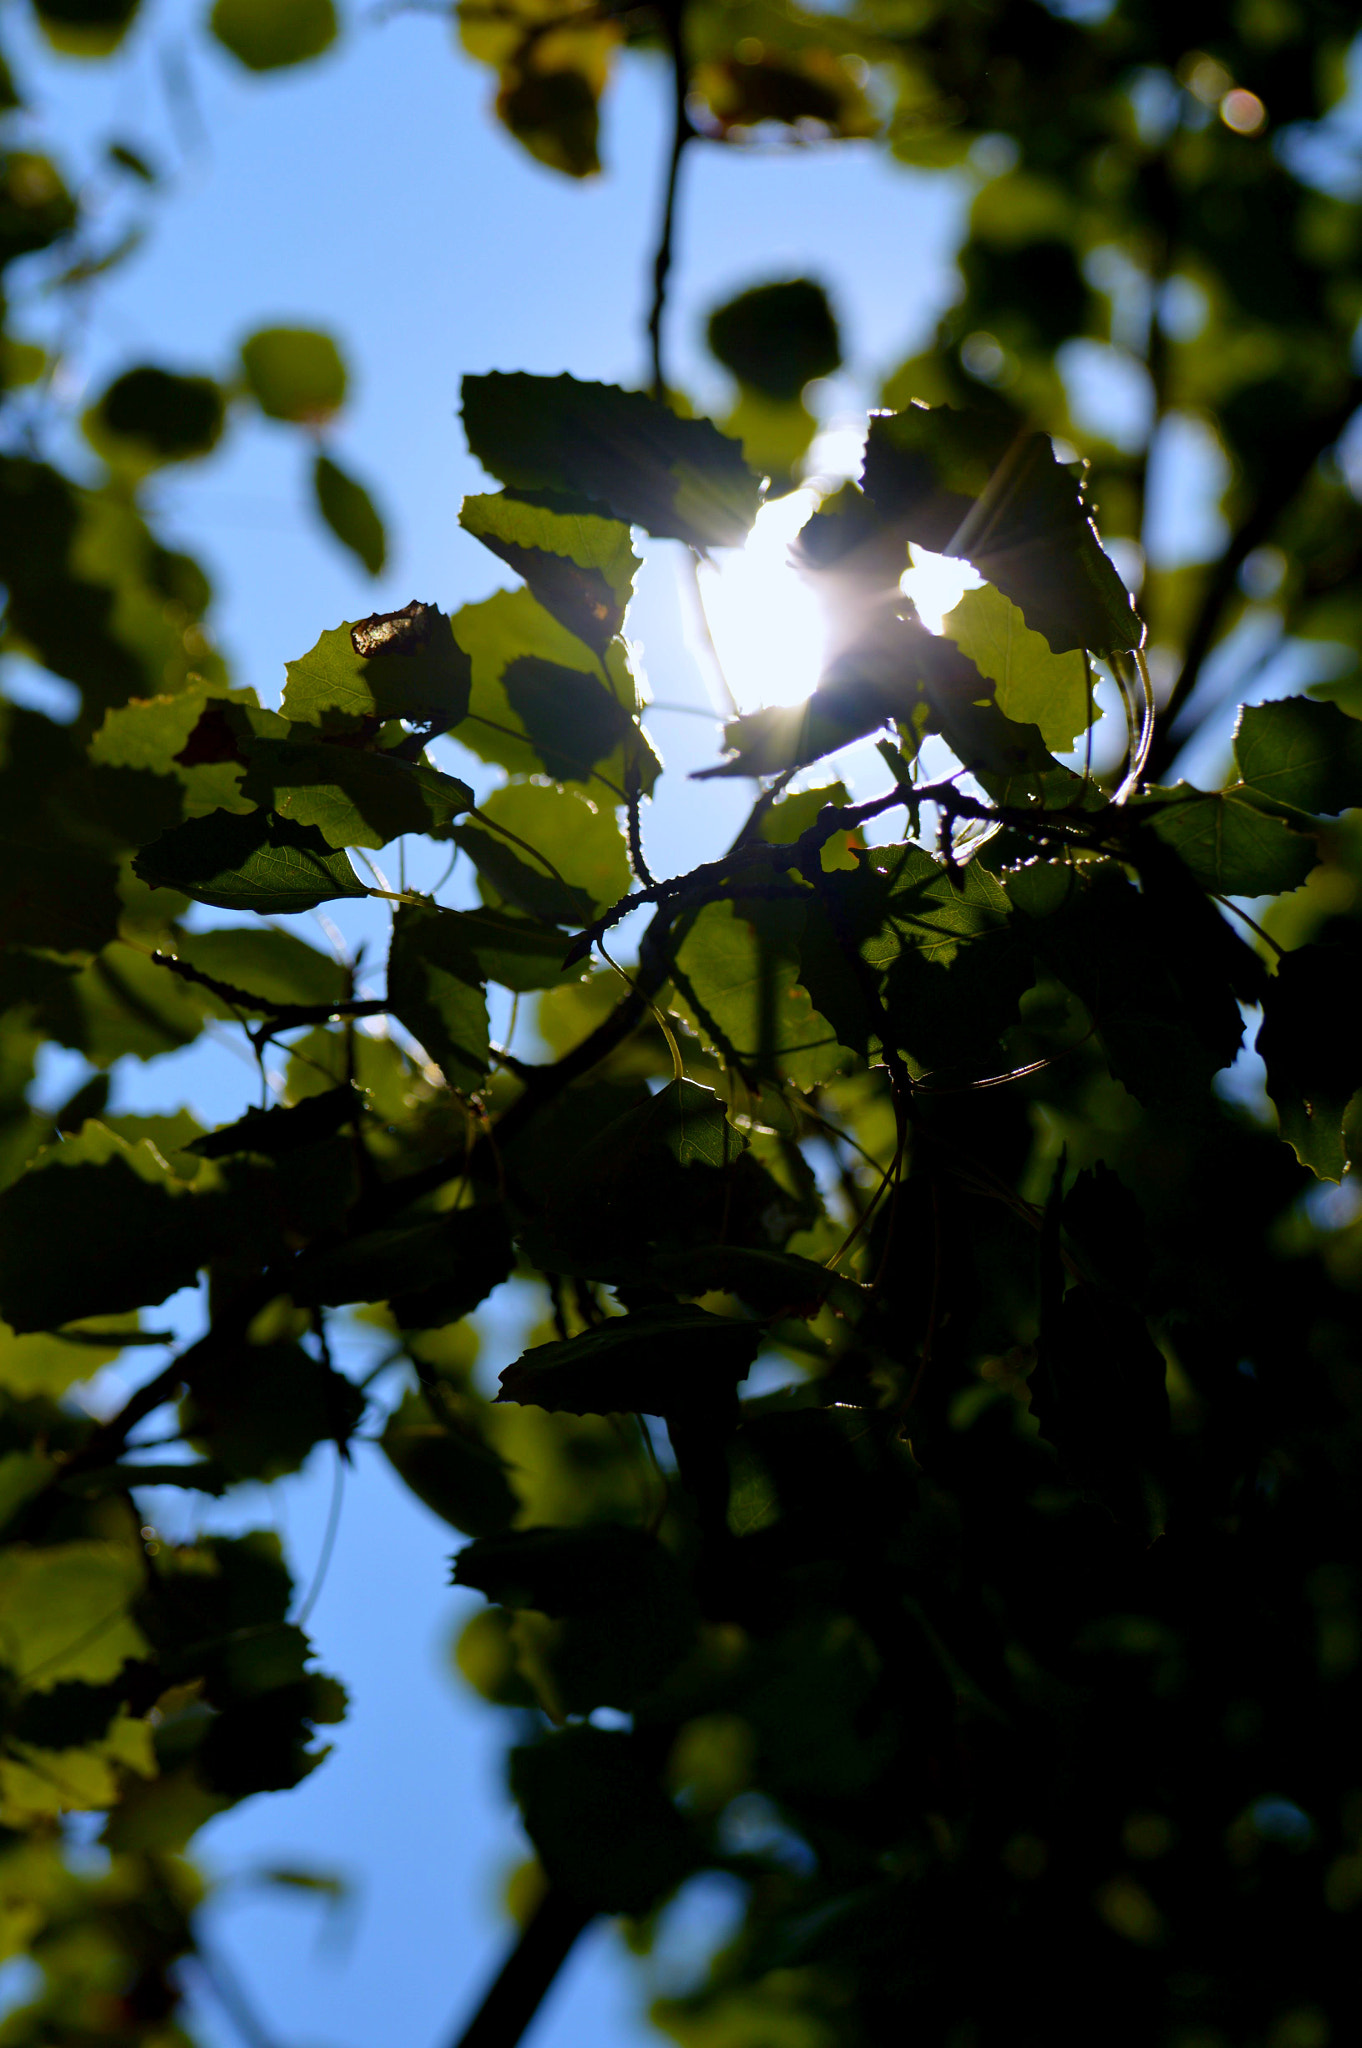 Nikon D3200 + Nikon AF-S Nikkor 70-300mm F4.5-5.6G VR sample photo. Sunshine through leaf's photography